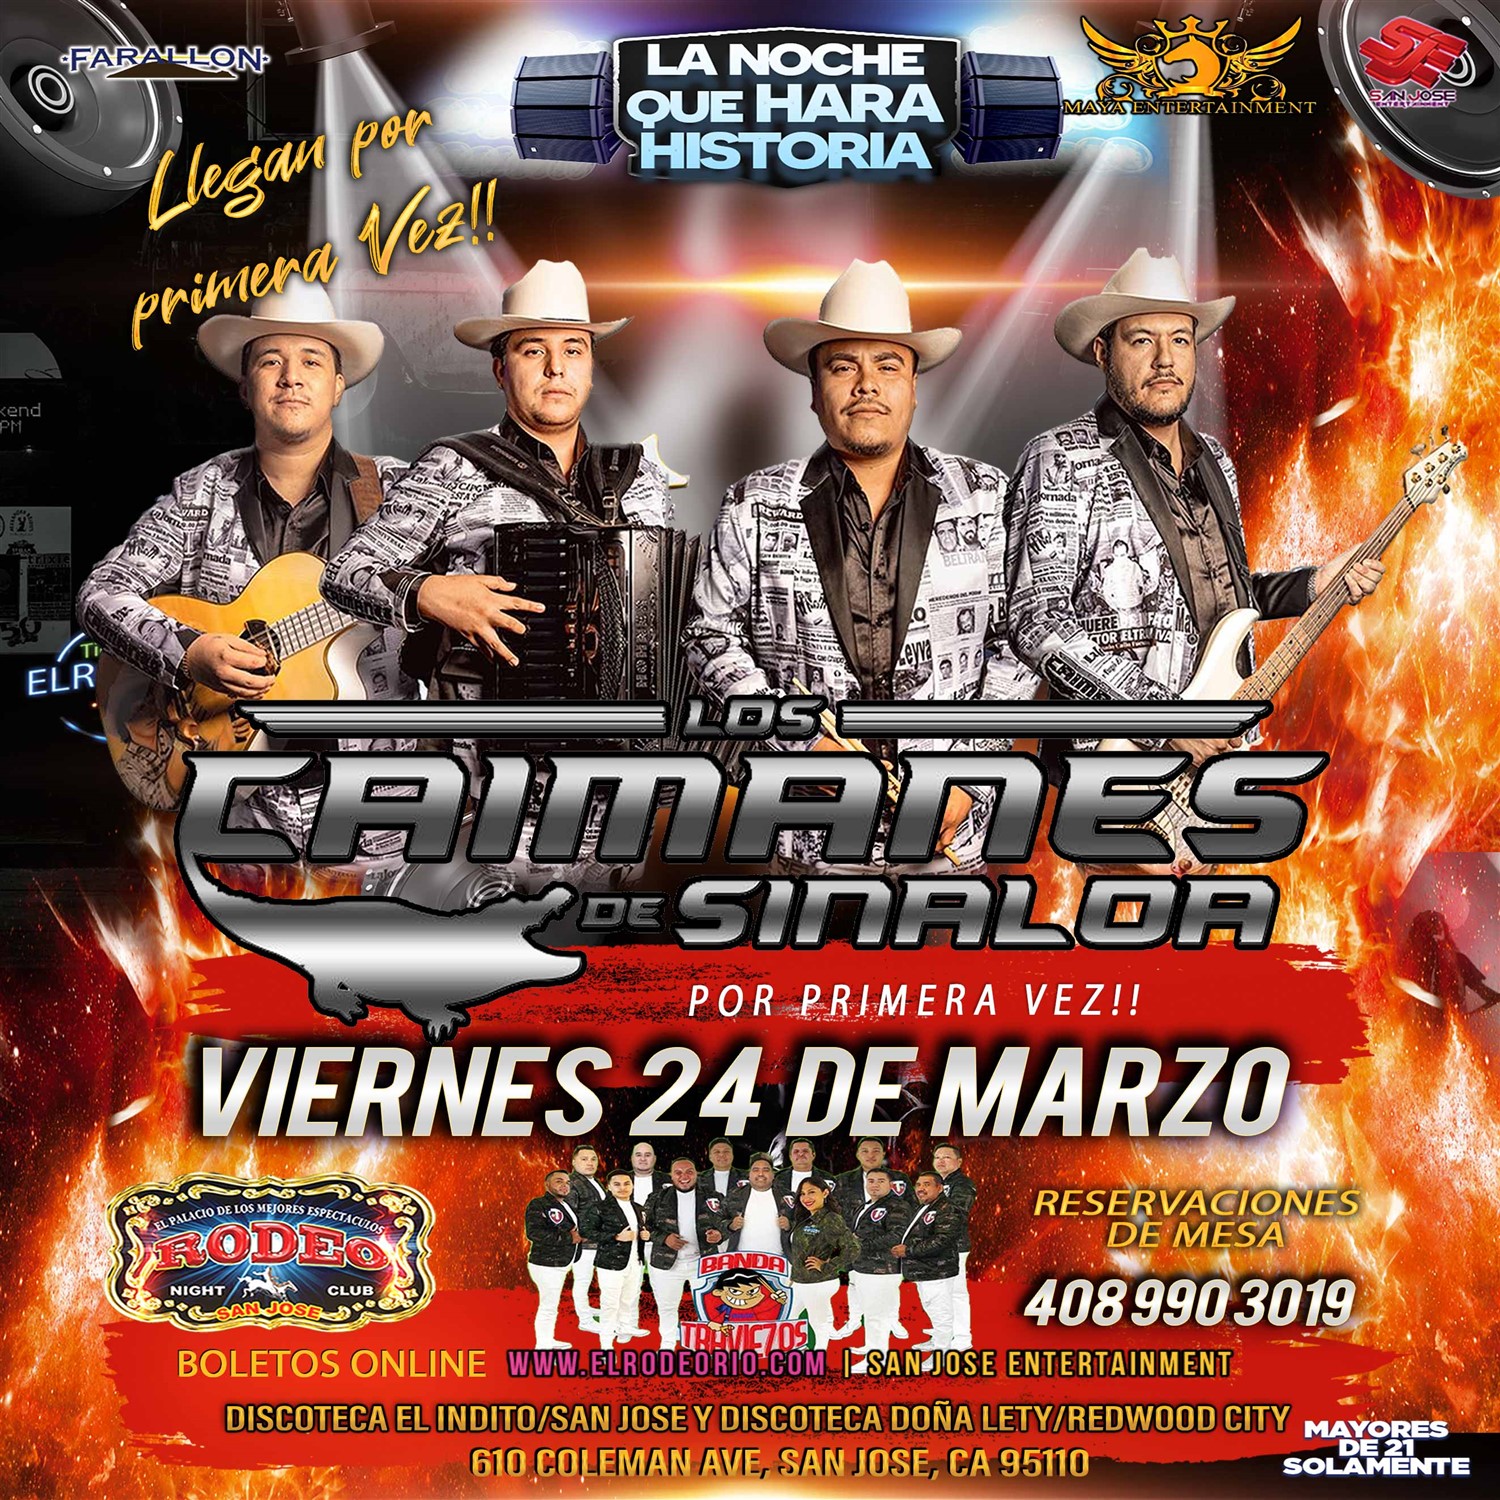 Los Caimanes de Sinaloa  on mars 24, 21:00@Club Rodeo - Achetez des billets et obtenez des informations surelrodeorio.com sanjoseentertainment